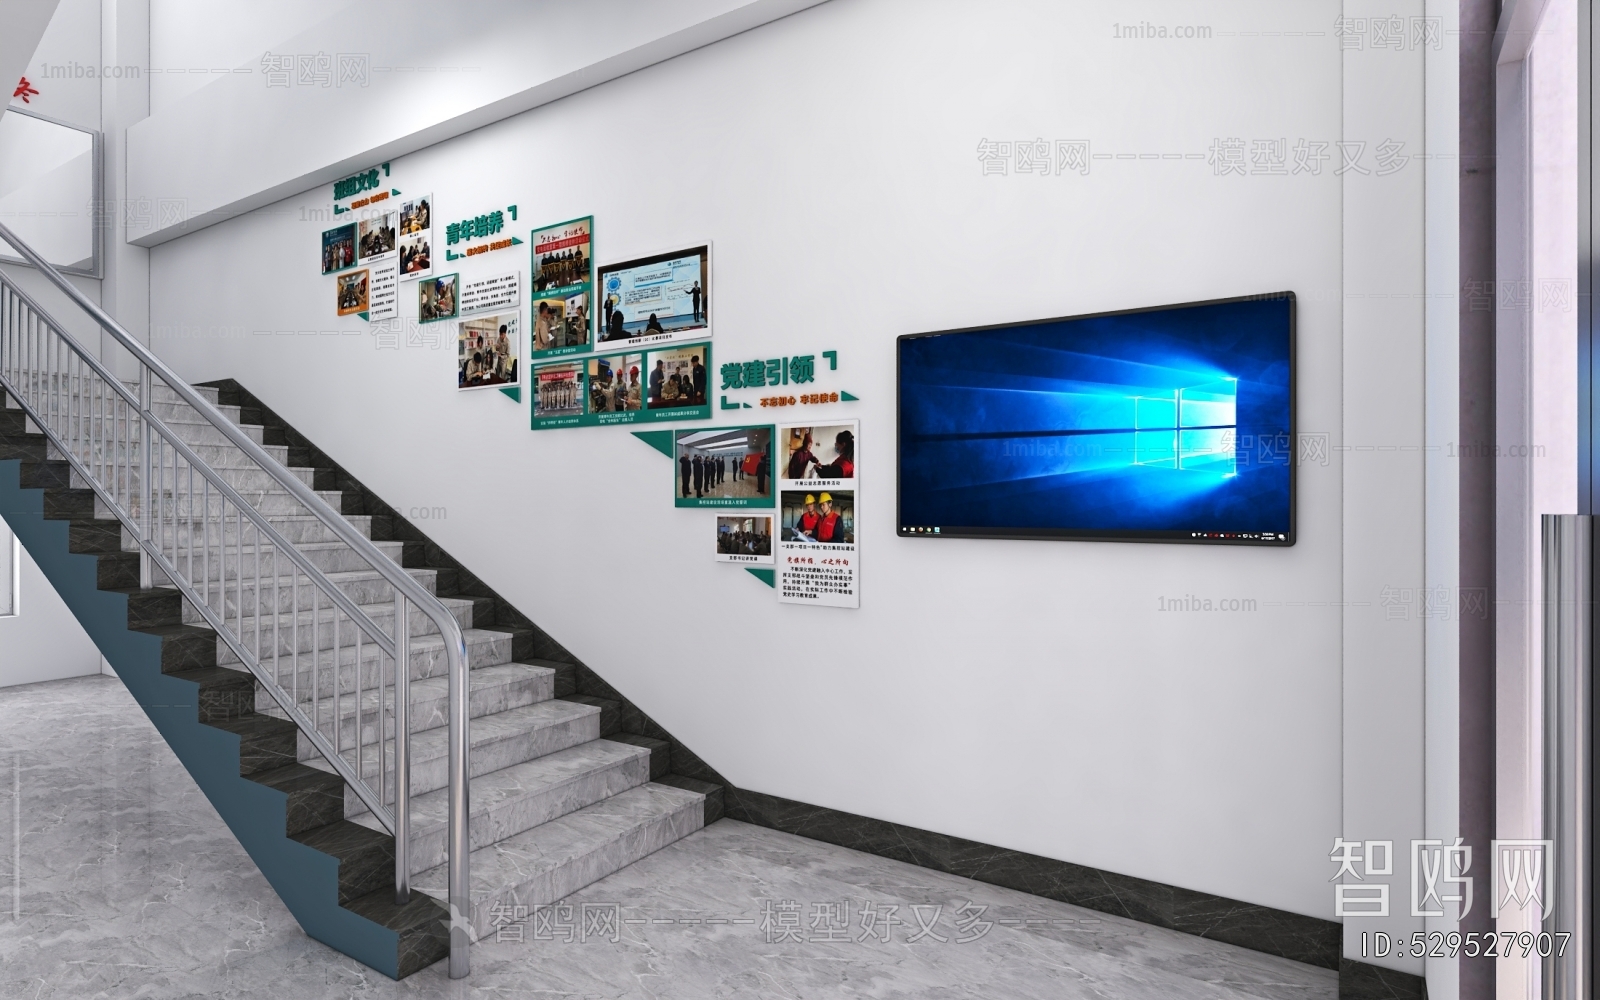 Modern Office Stairwell